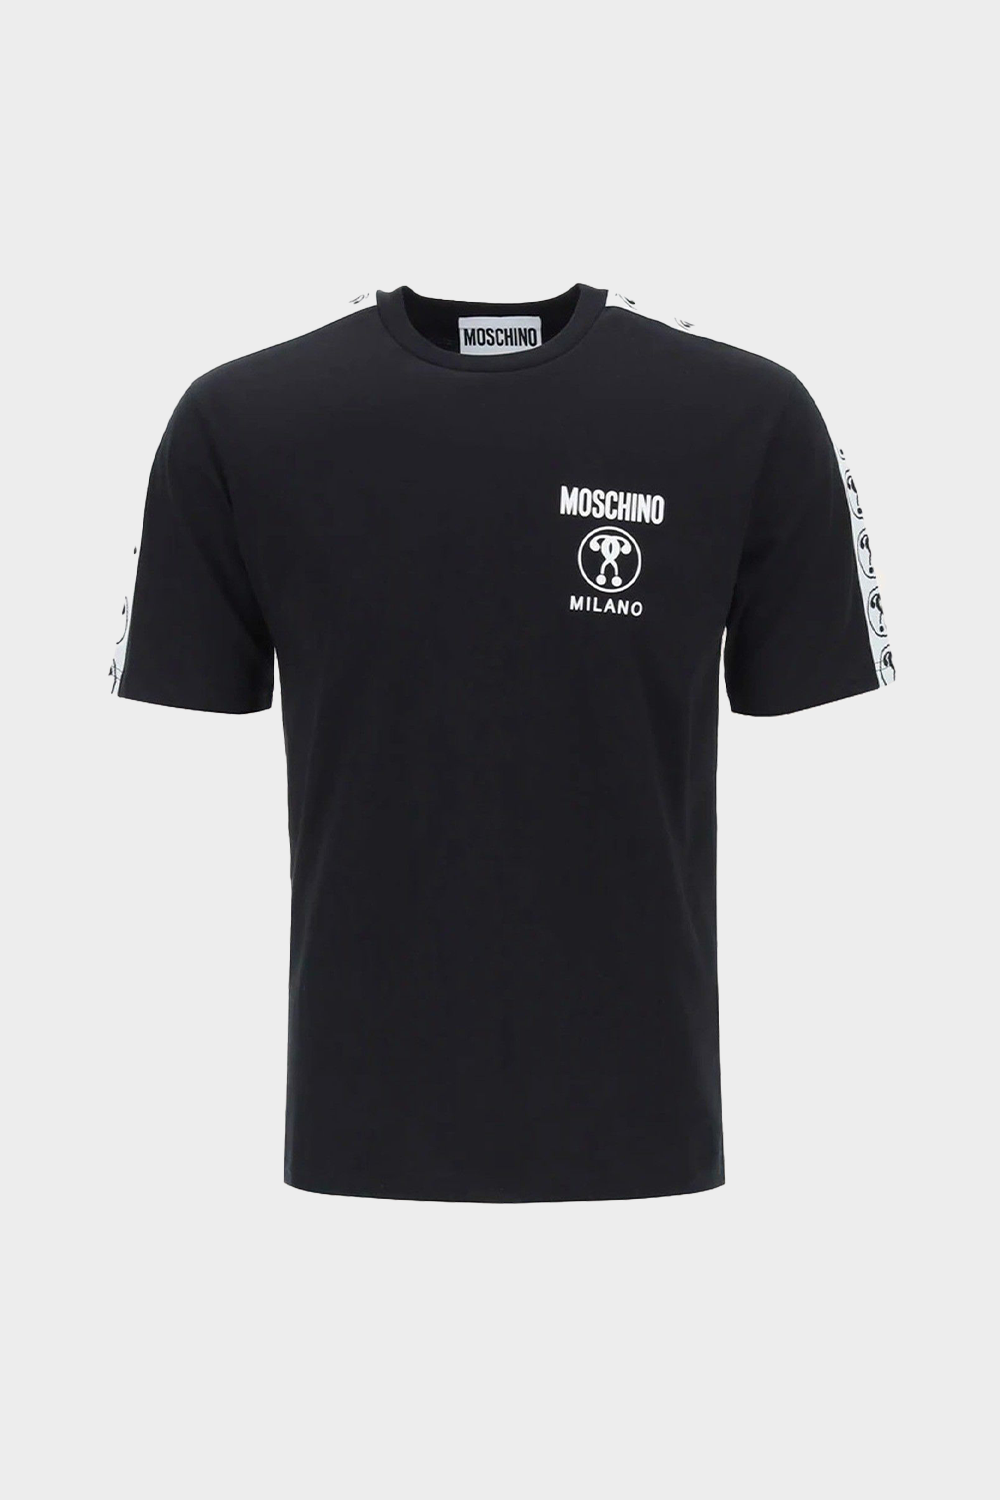 חולצה לגברים בצבע שחור MOSCHINO MOSCHINO Vendome online | ונדום .